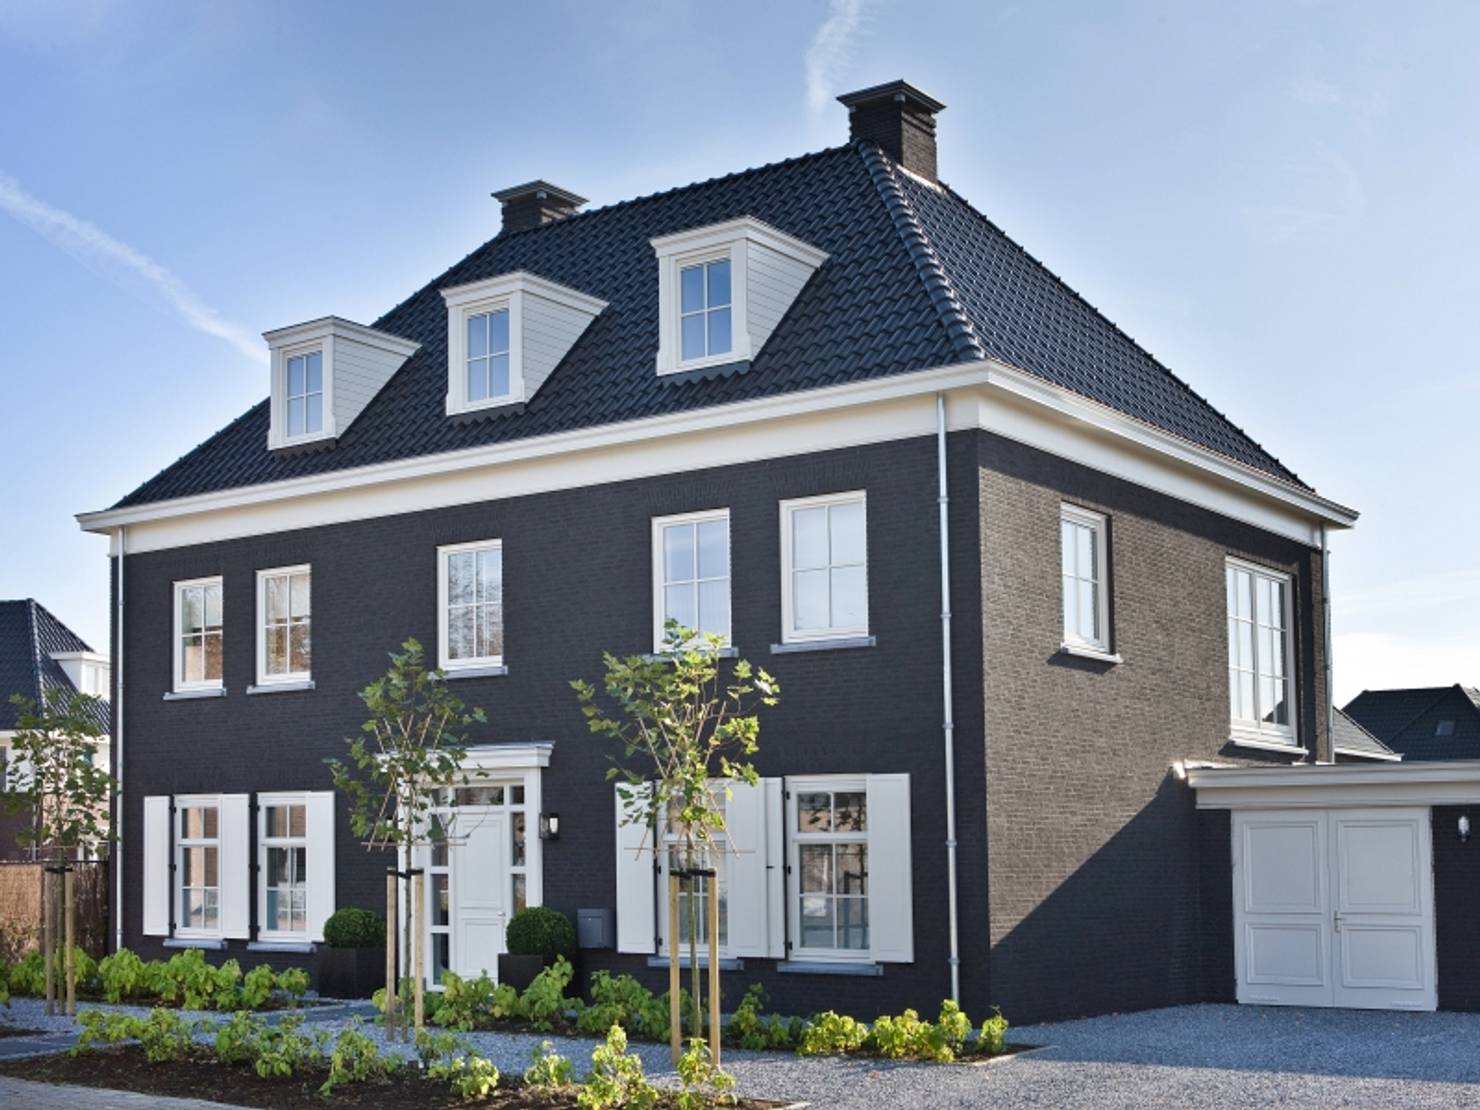 Голландский дом из кирпича- фотографии
				